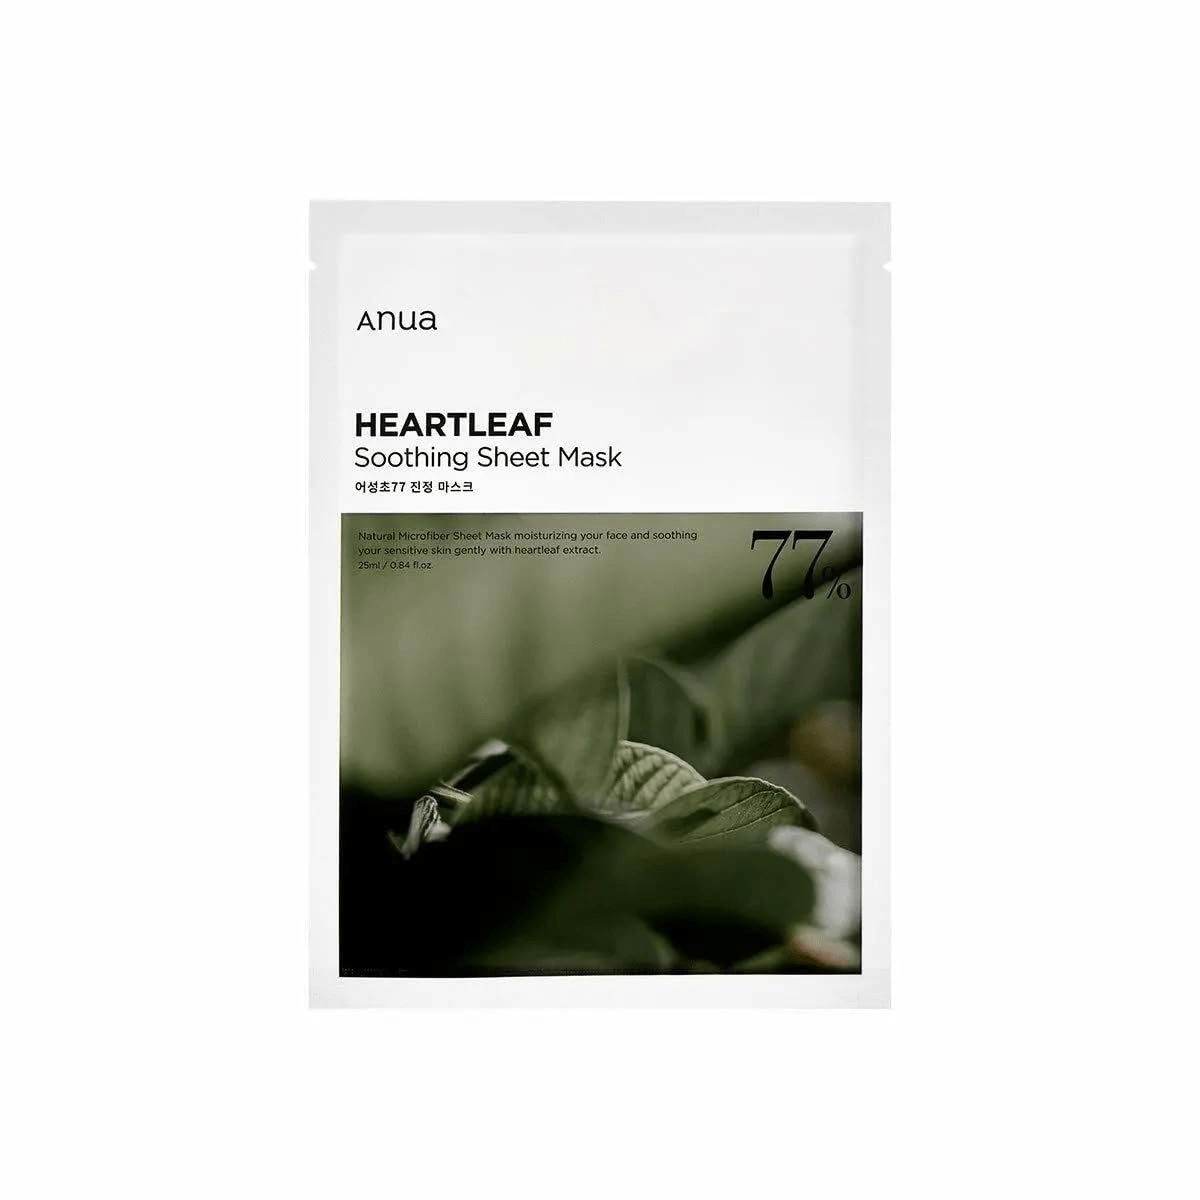 skincare-kbeauty-glowtime-anua 77 heartleaf soothing sheet mask